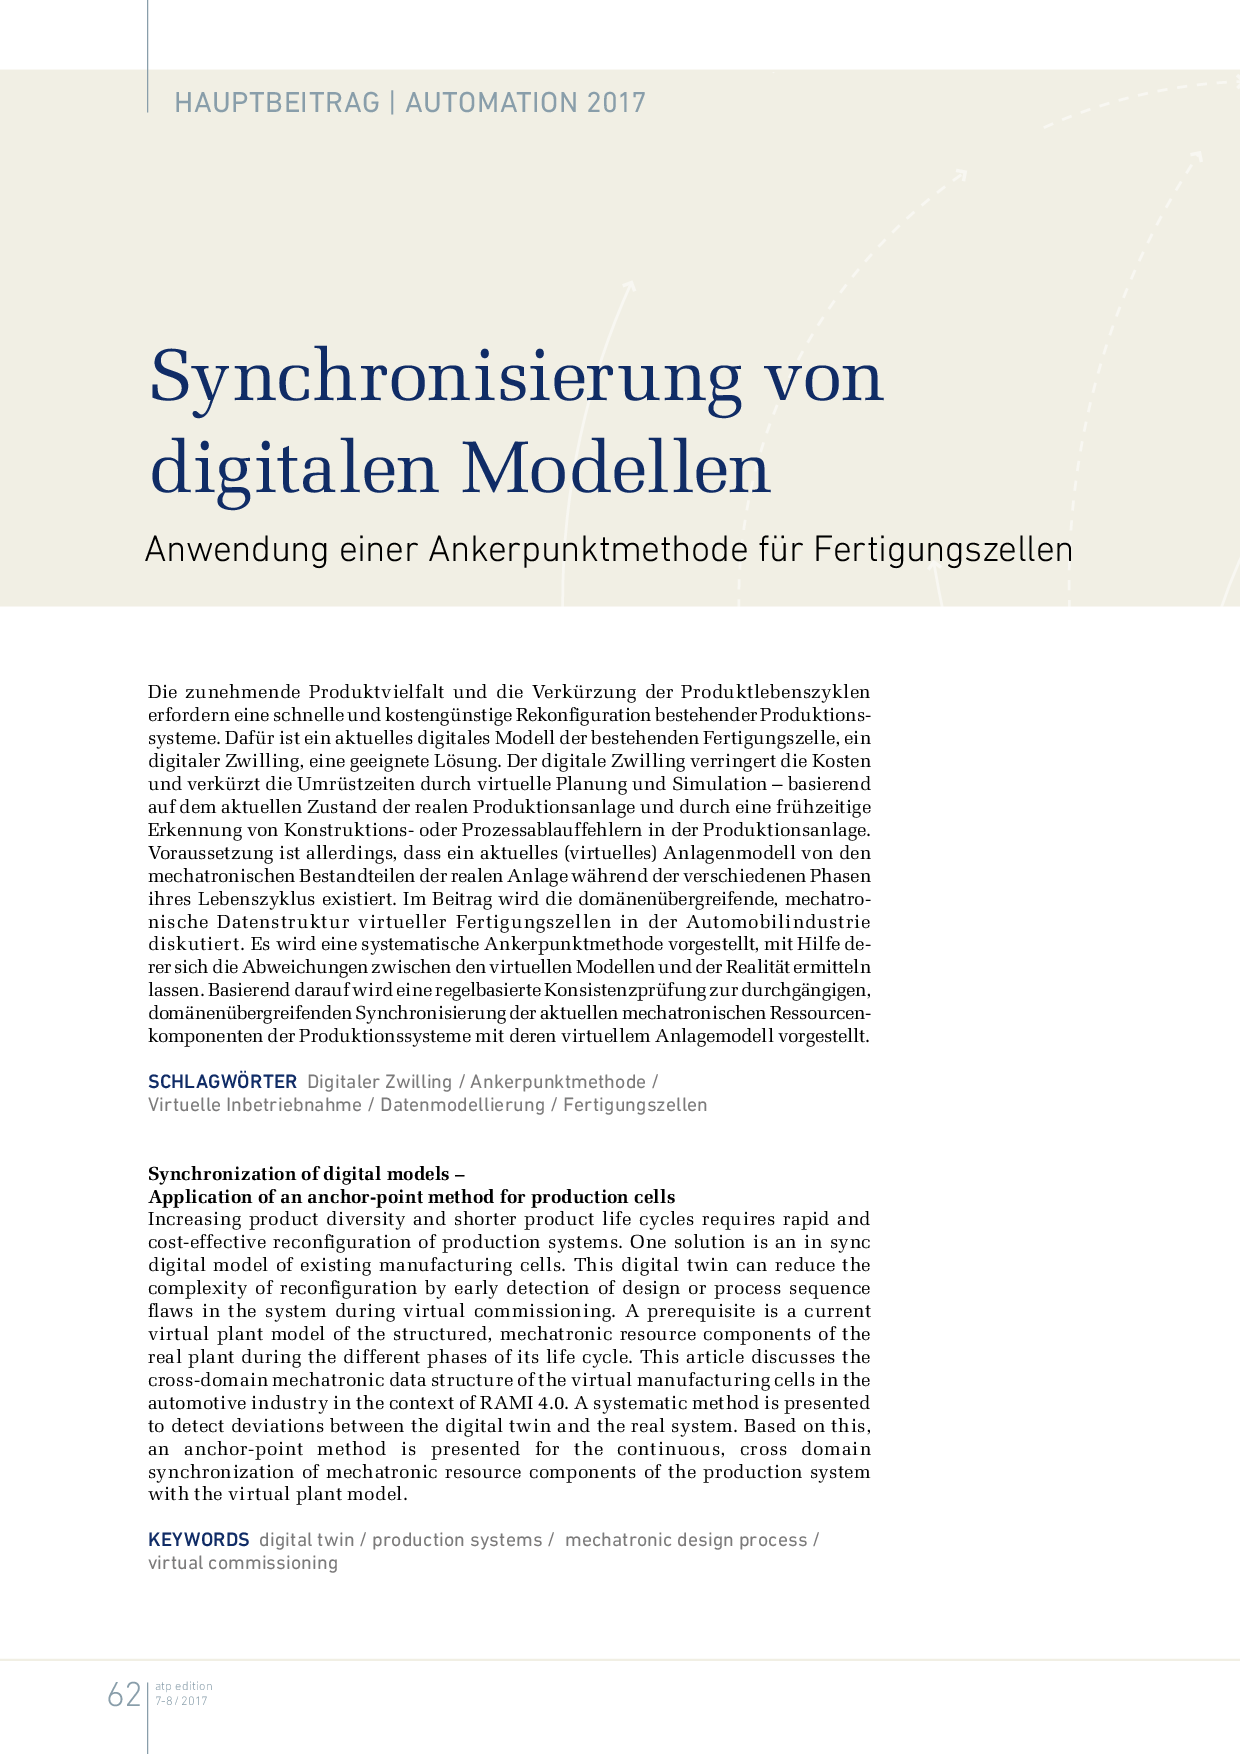 Synchronisierung von digitalen Modellen